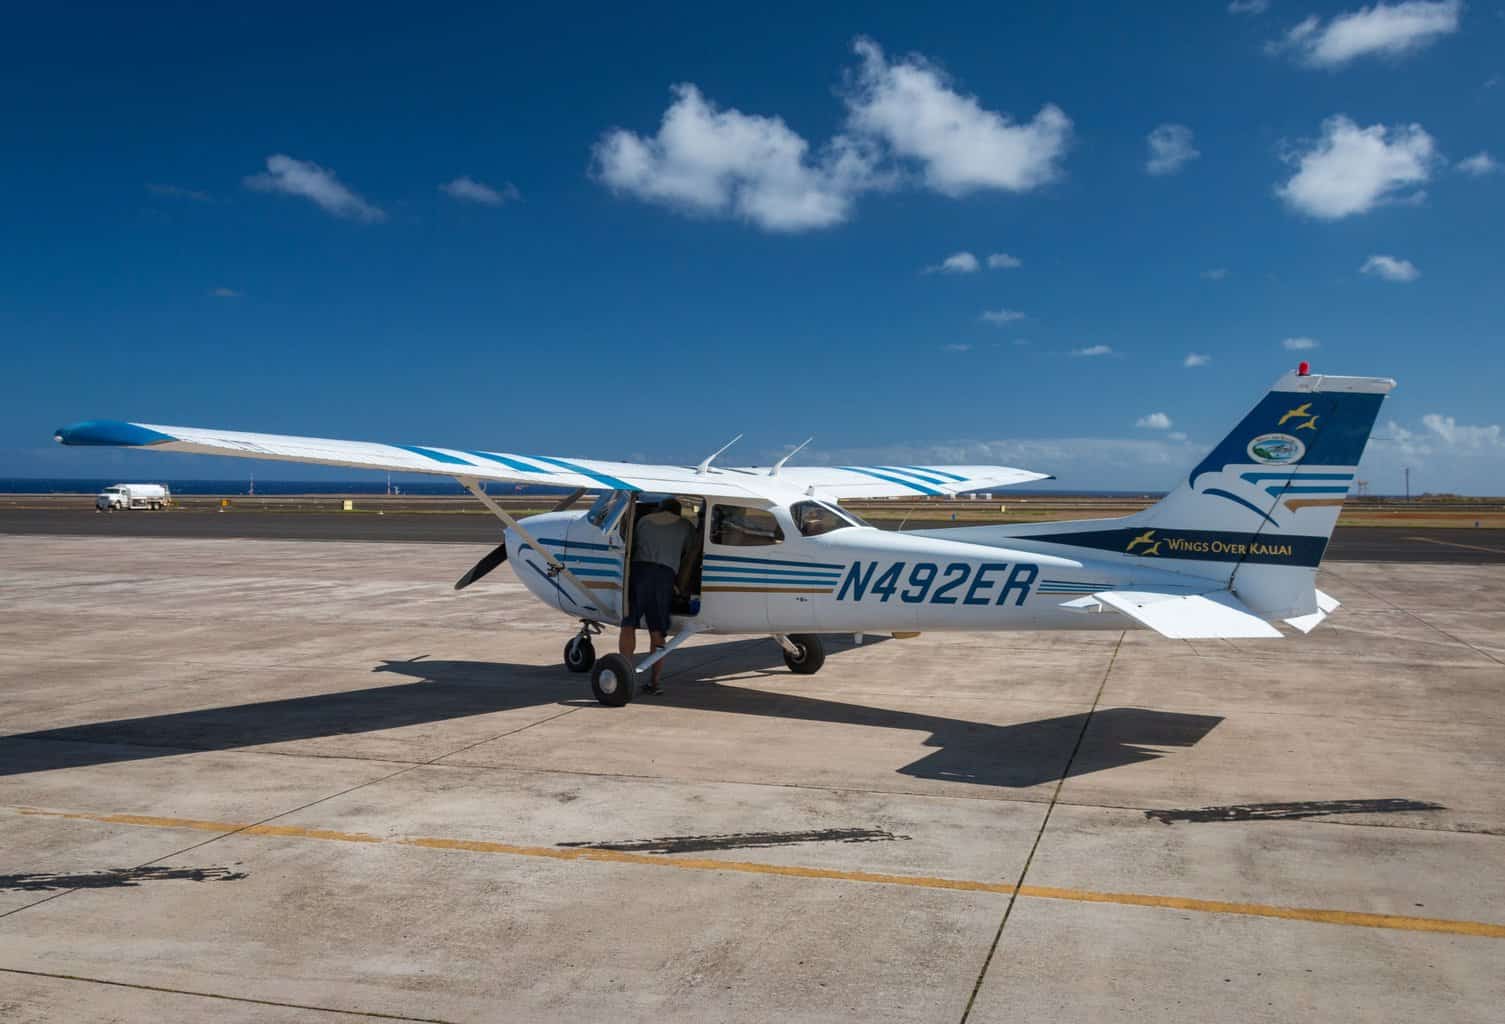 Kauai Airplane Tours